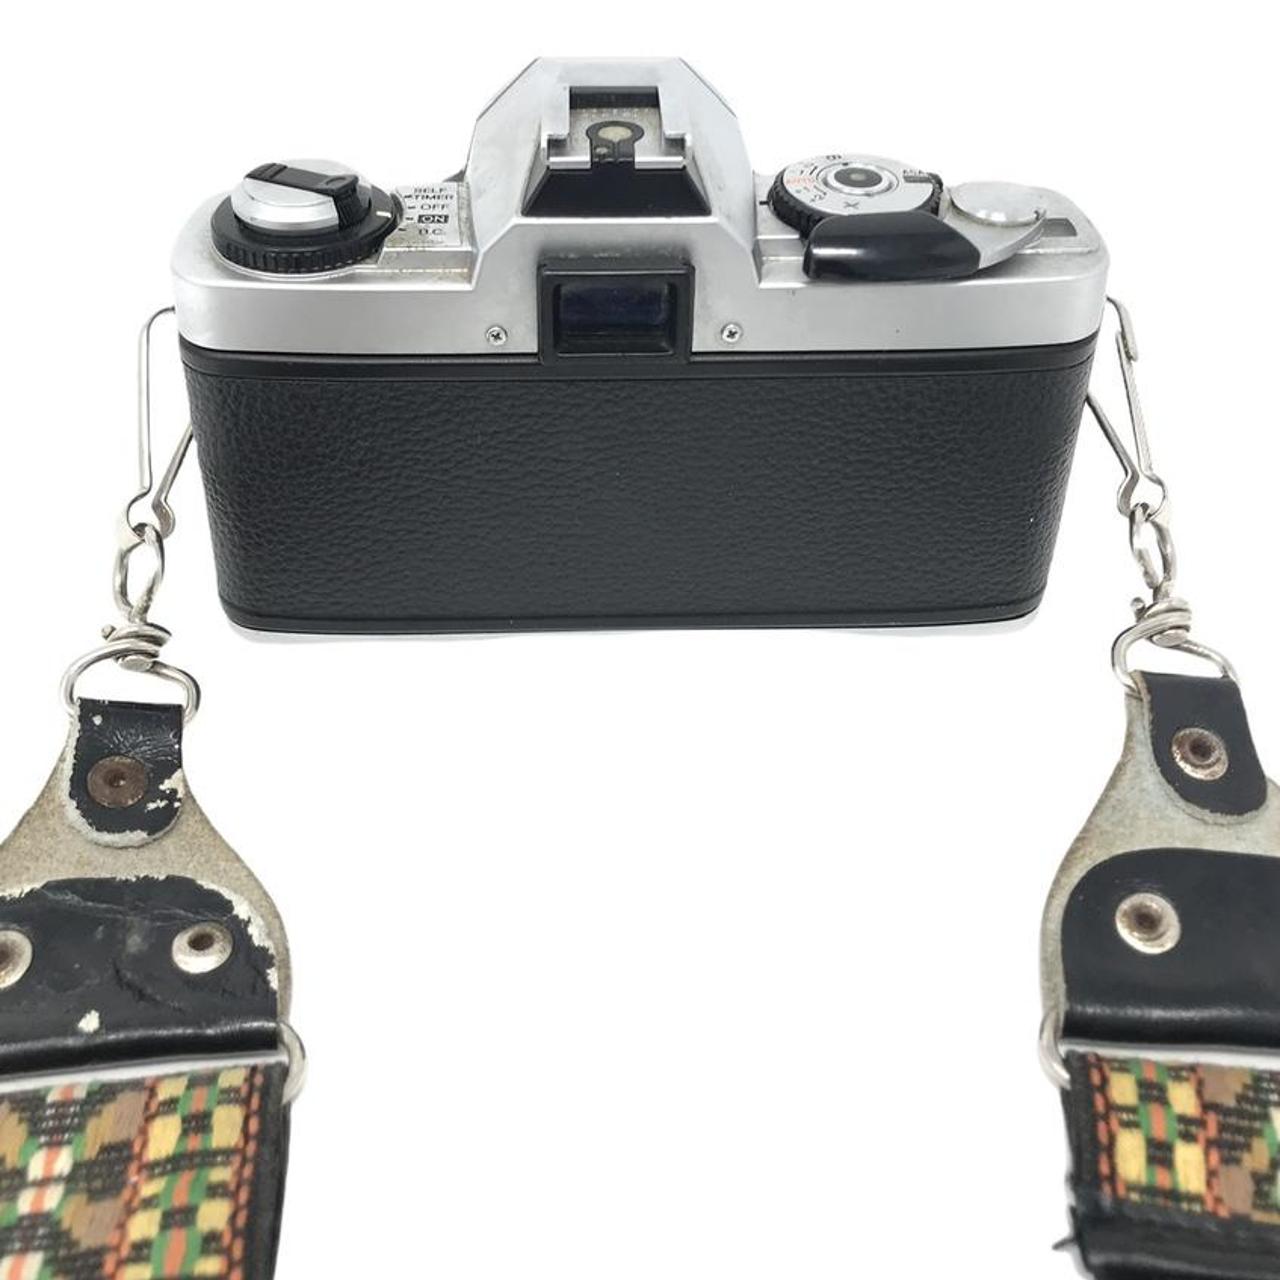 Product Image 4 - Minolta XG-A 35mm Film Camera

Comes